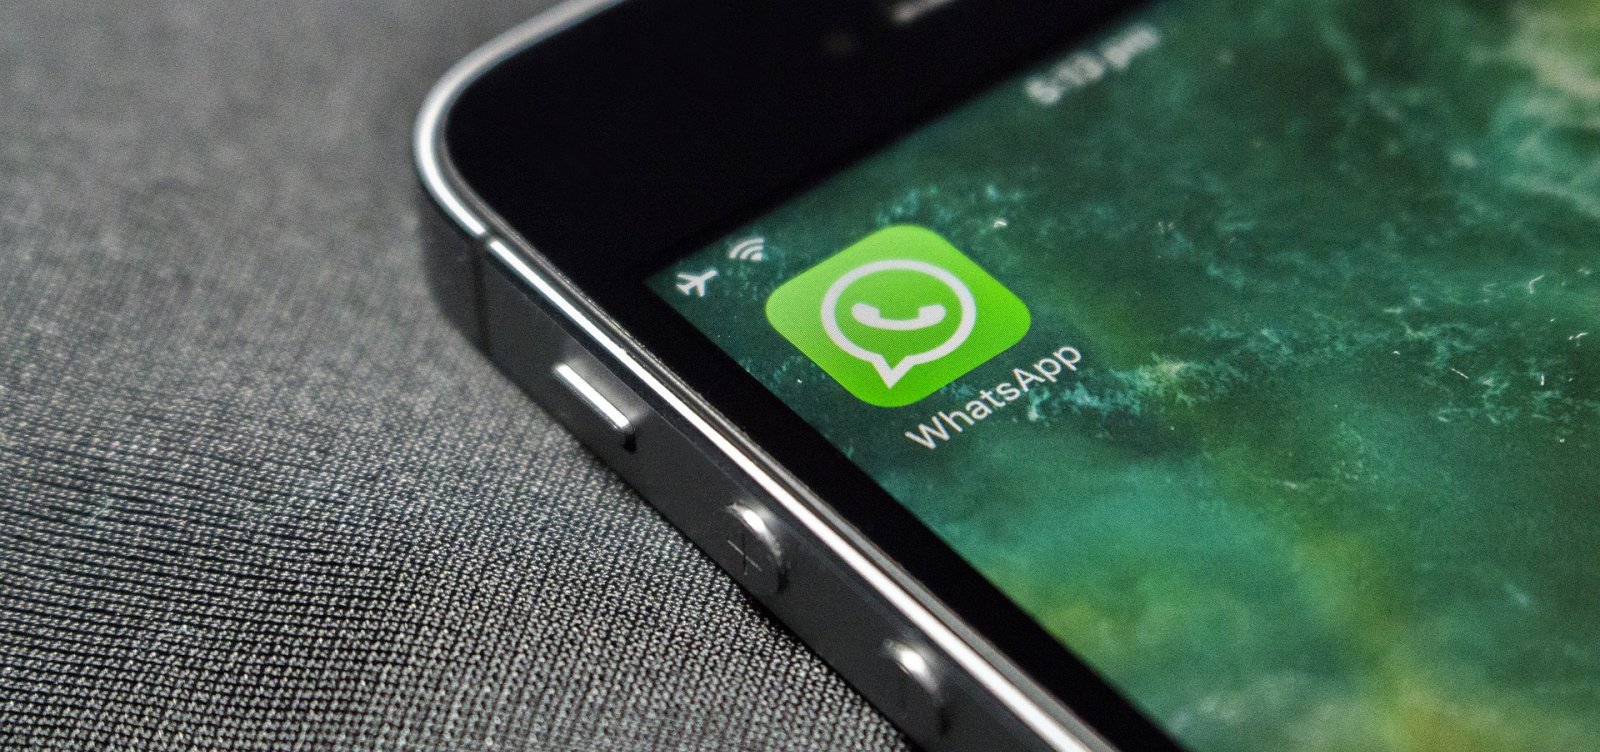 WhatsApp limita encaminhamento de mensagens para conter fake news sobre Covid-19